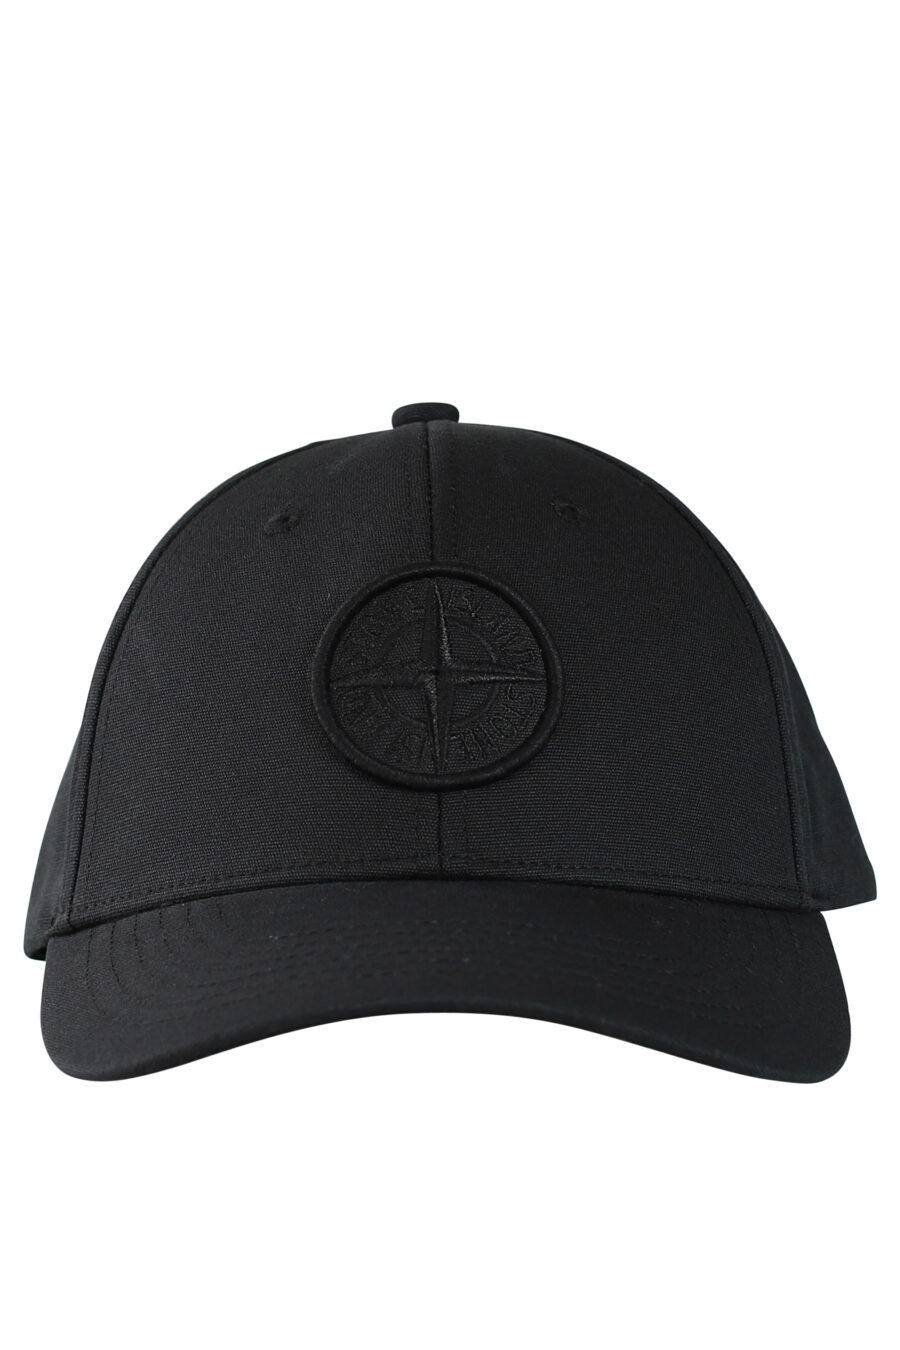 Gorra negra con logo circular - Photos 531